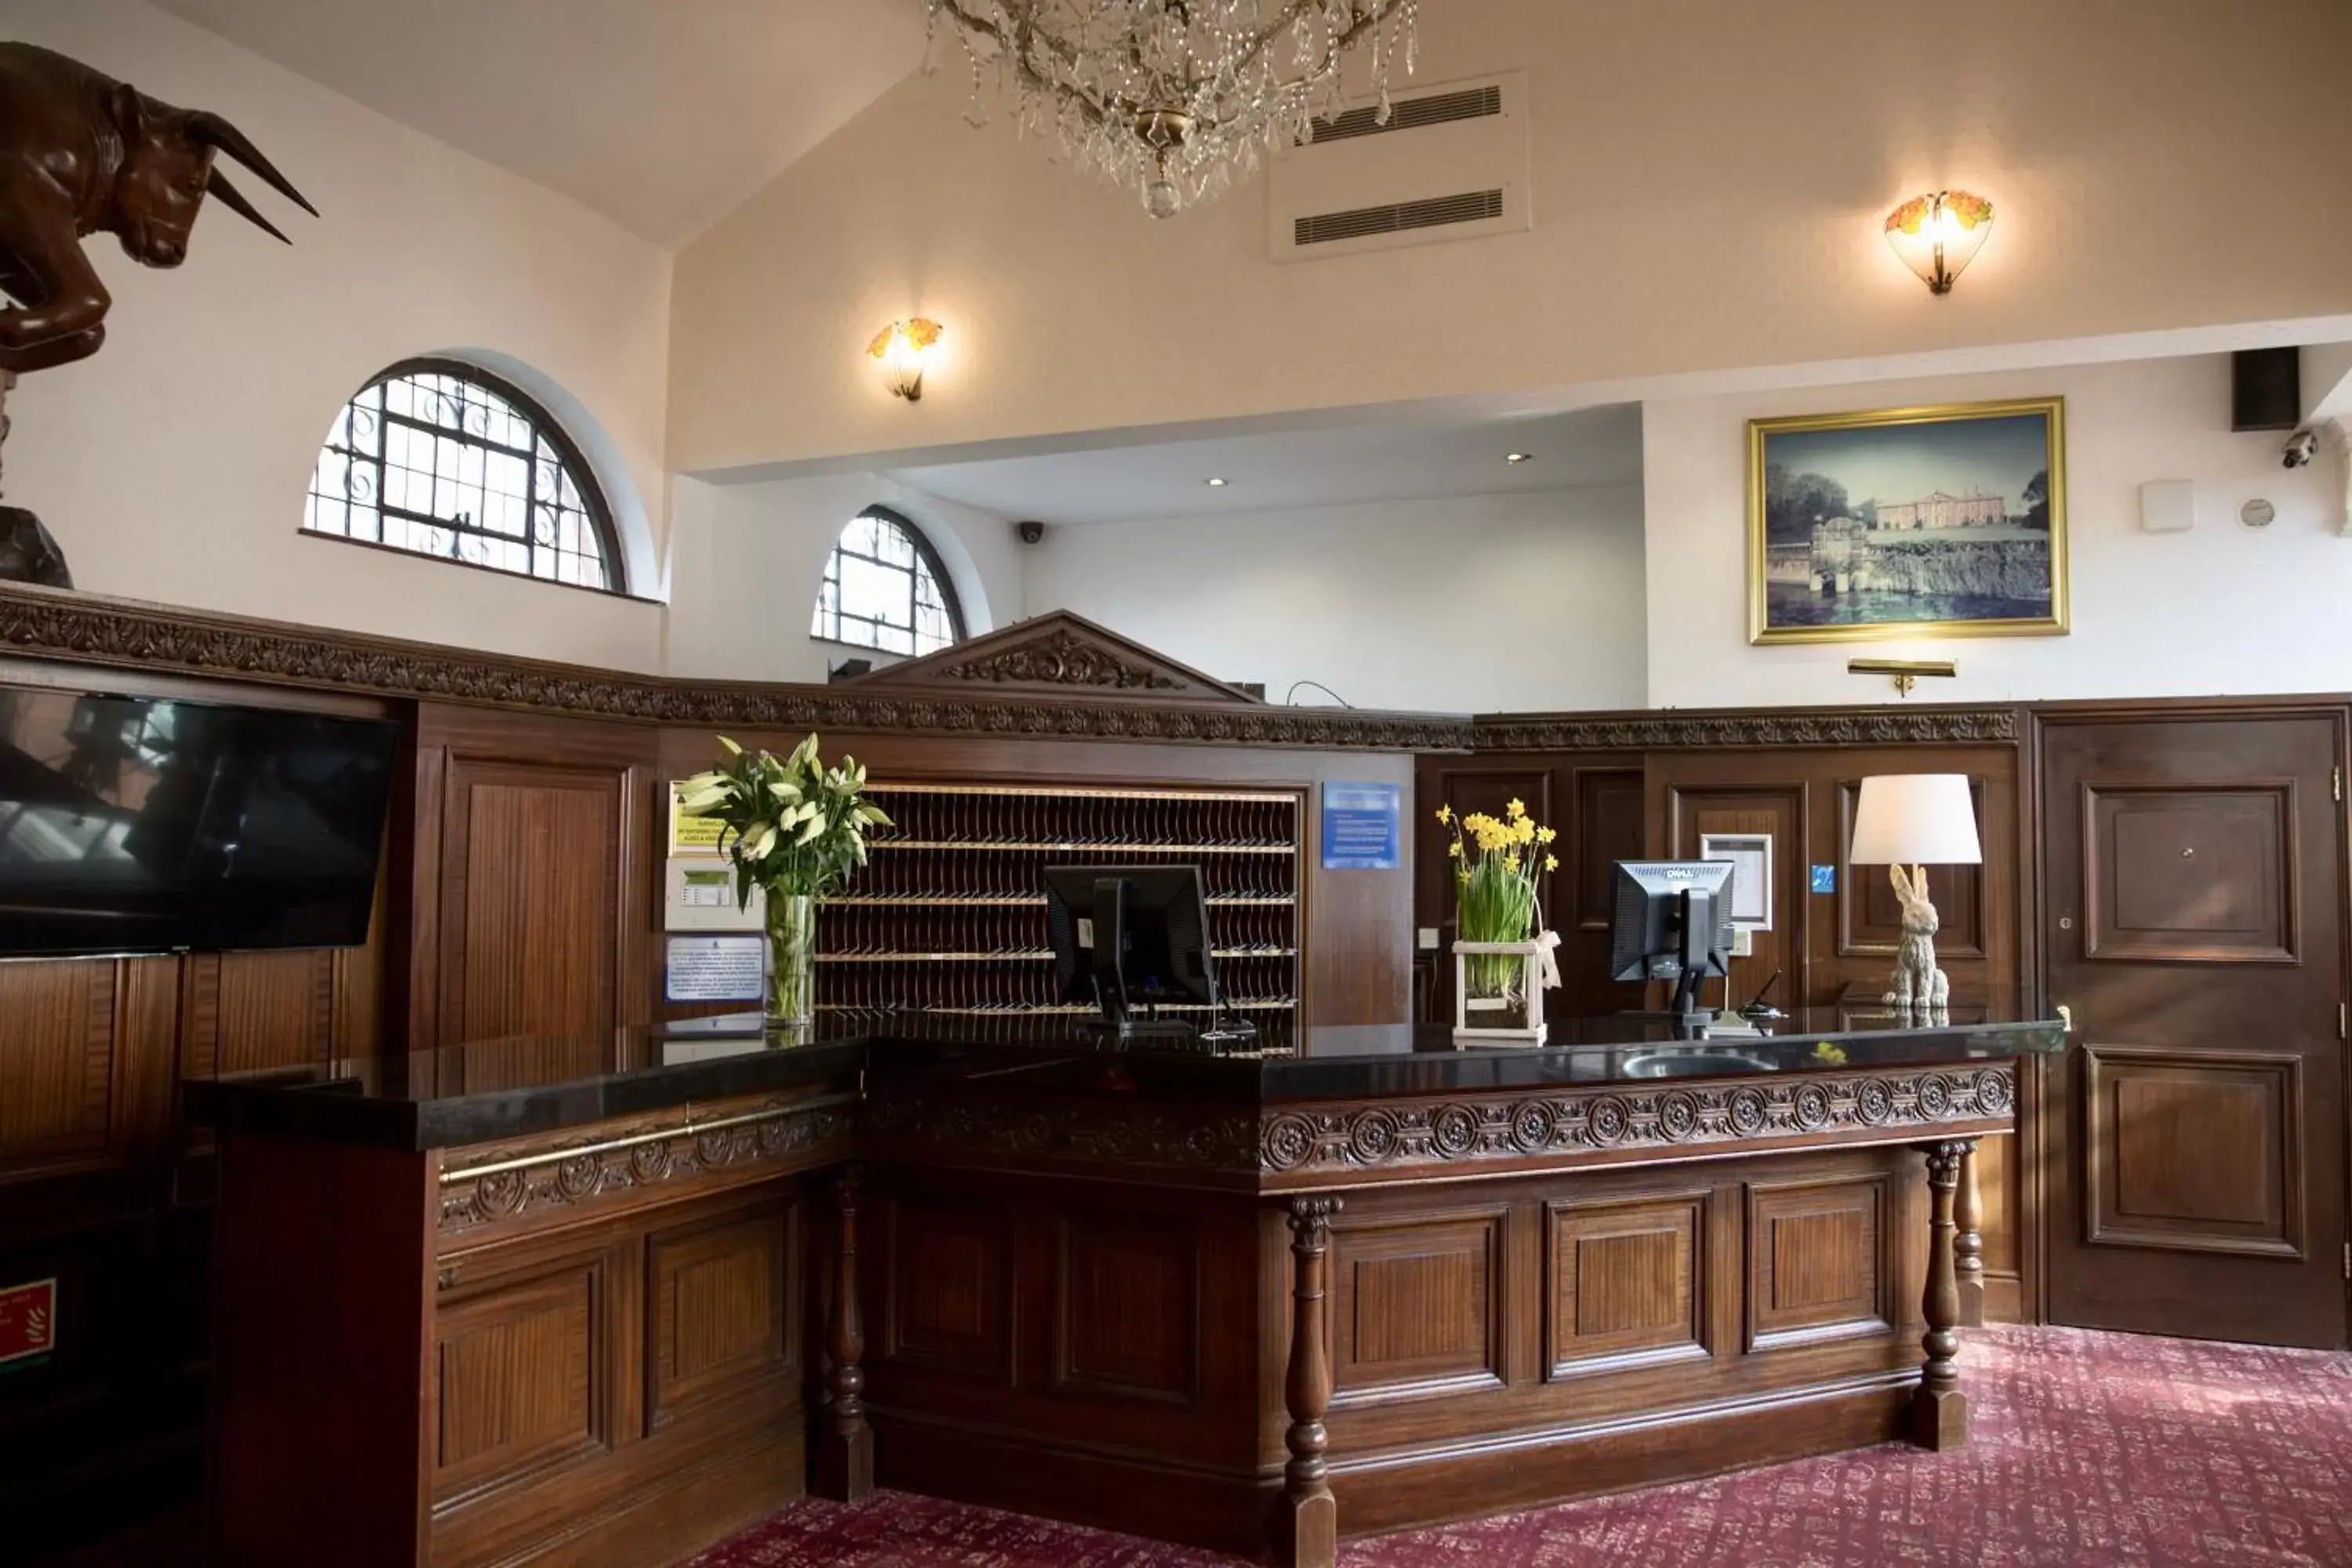 Lobby or reception, Lobby/Reception in Bosworth Hall Hotel & Spa